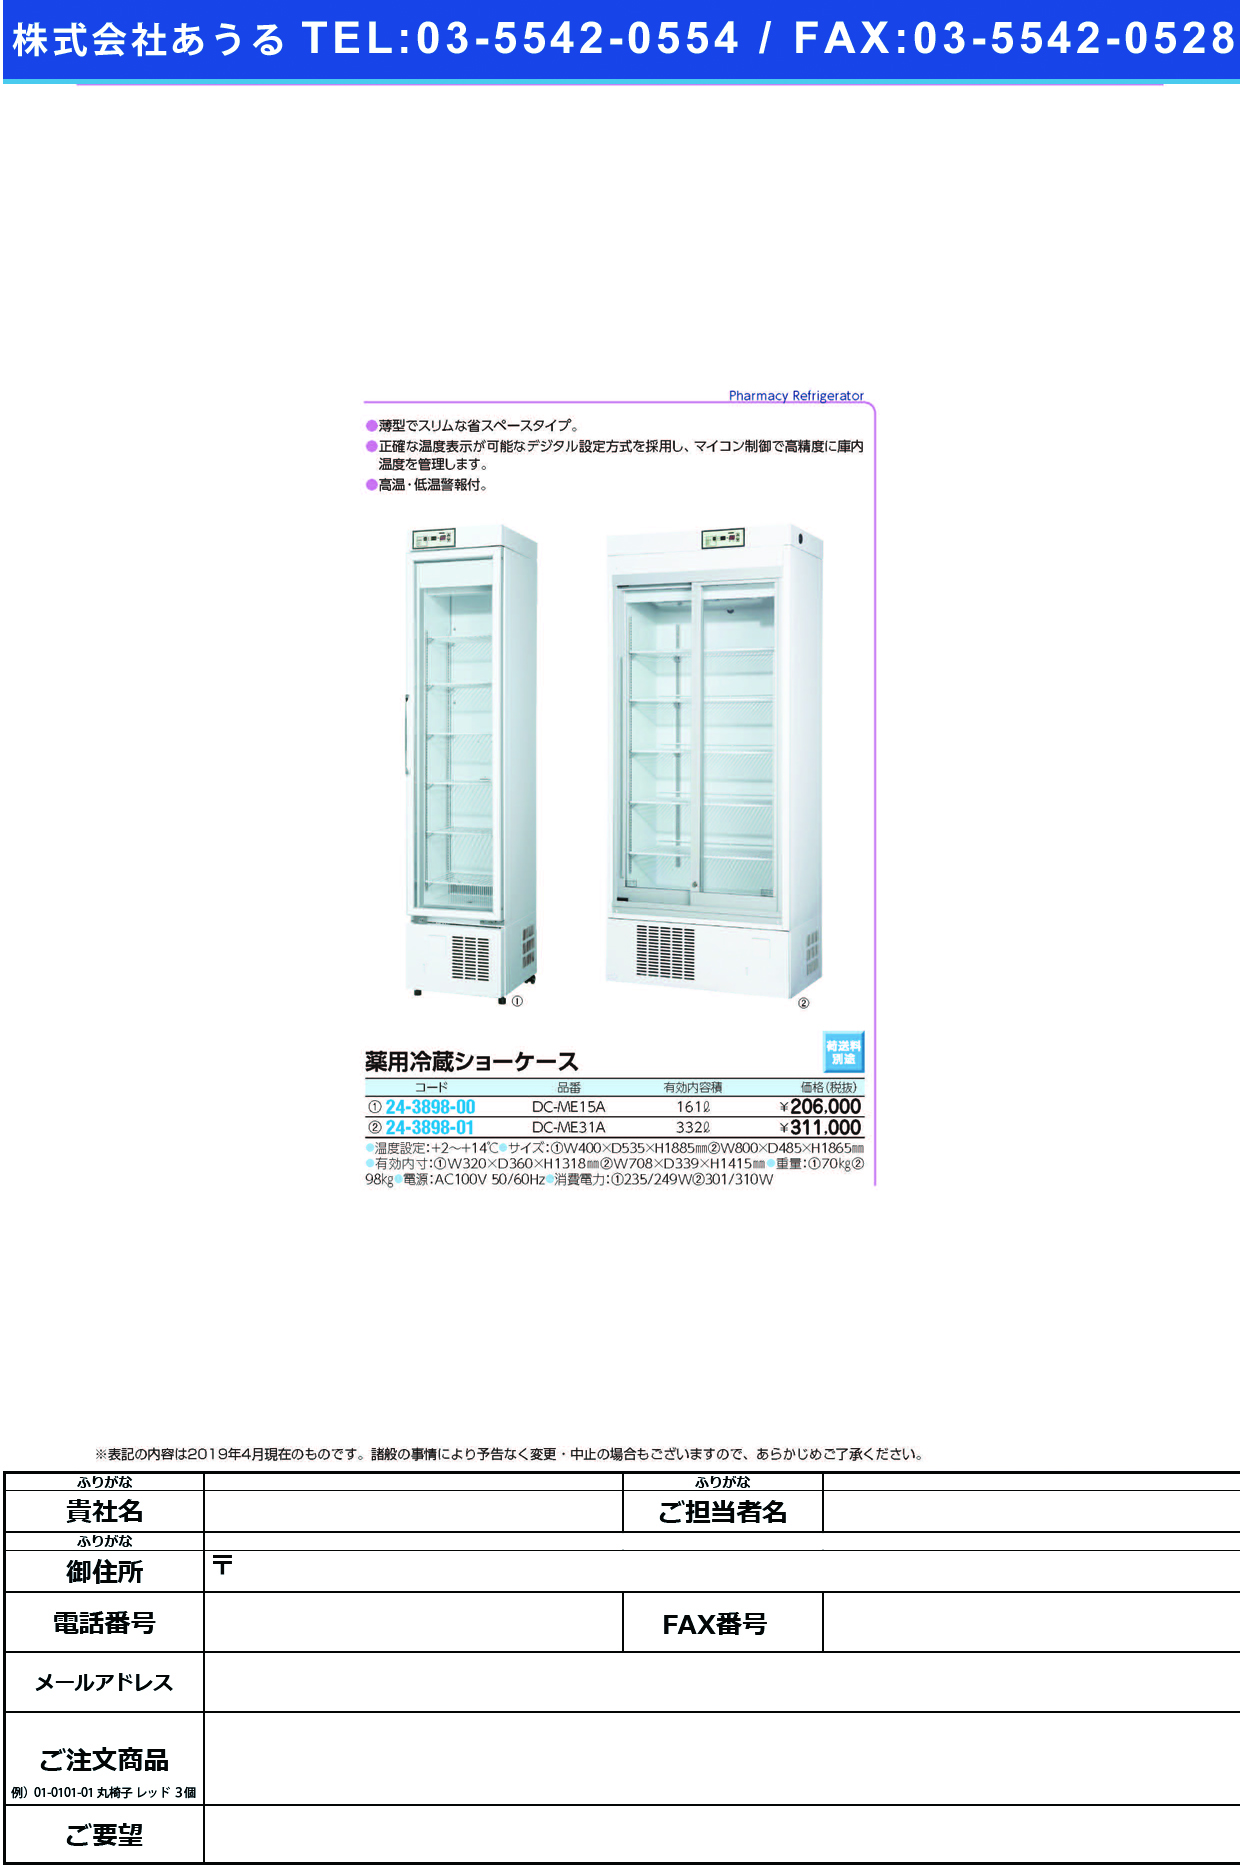 (24-3898-01)薬用冷蔵ショーケース DC-ME31A(322L) ﾔｸﾖｳﾚｲｿﾞｳｼｮｰｹｰｽ【1台単位】【2019年カタログ商品】